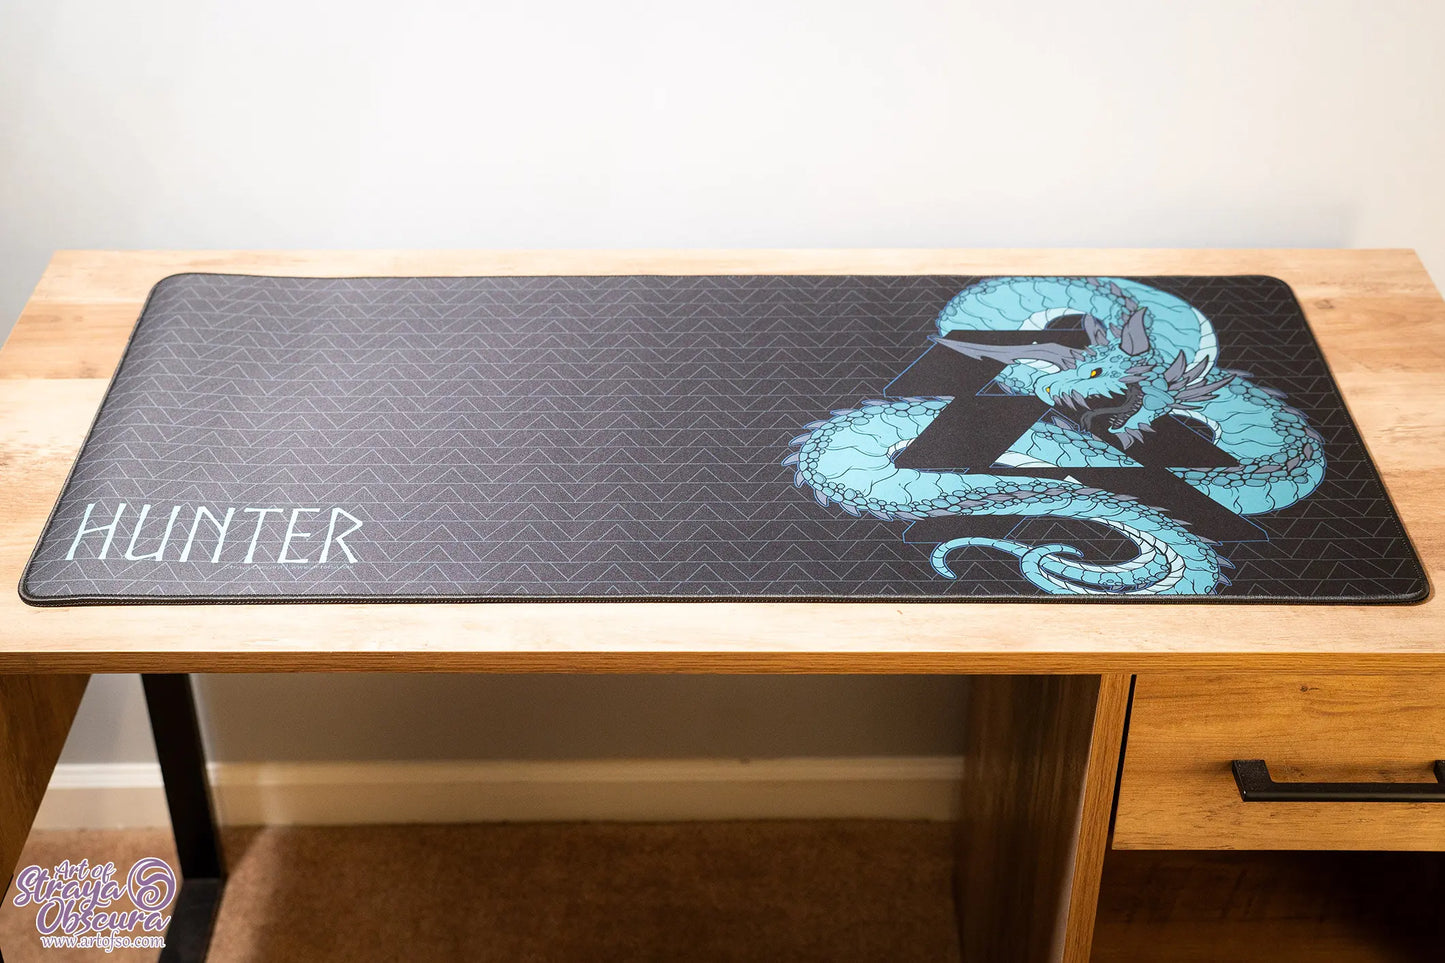 Hunter Class Dragon Desk Mat